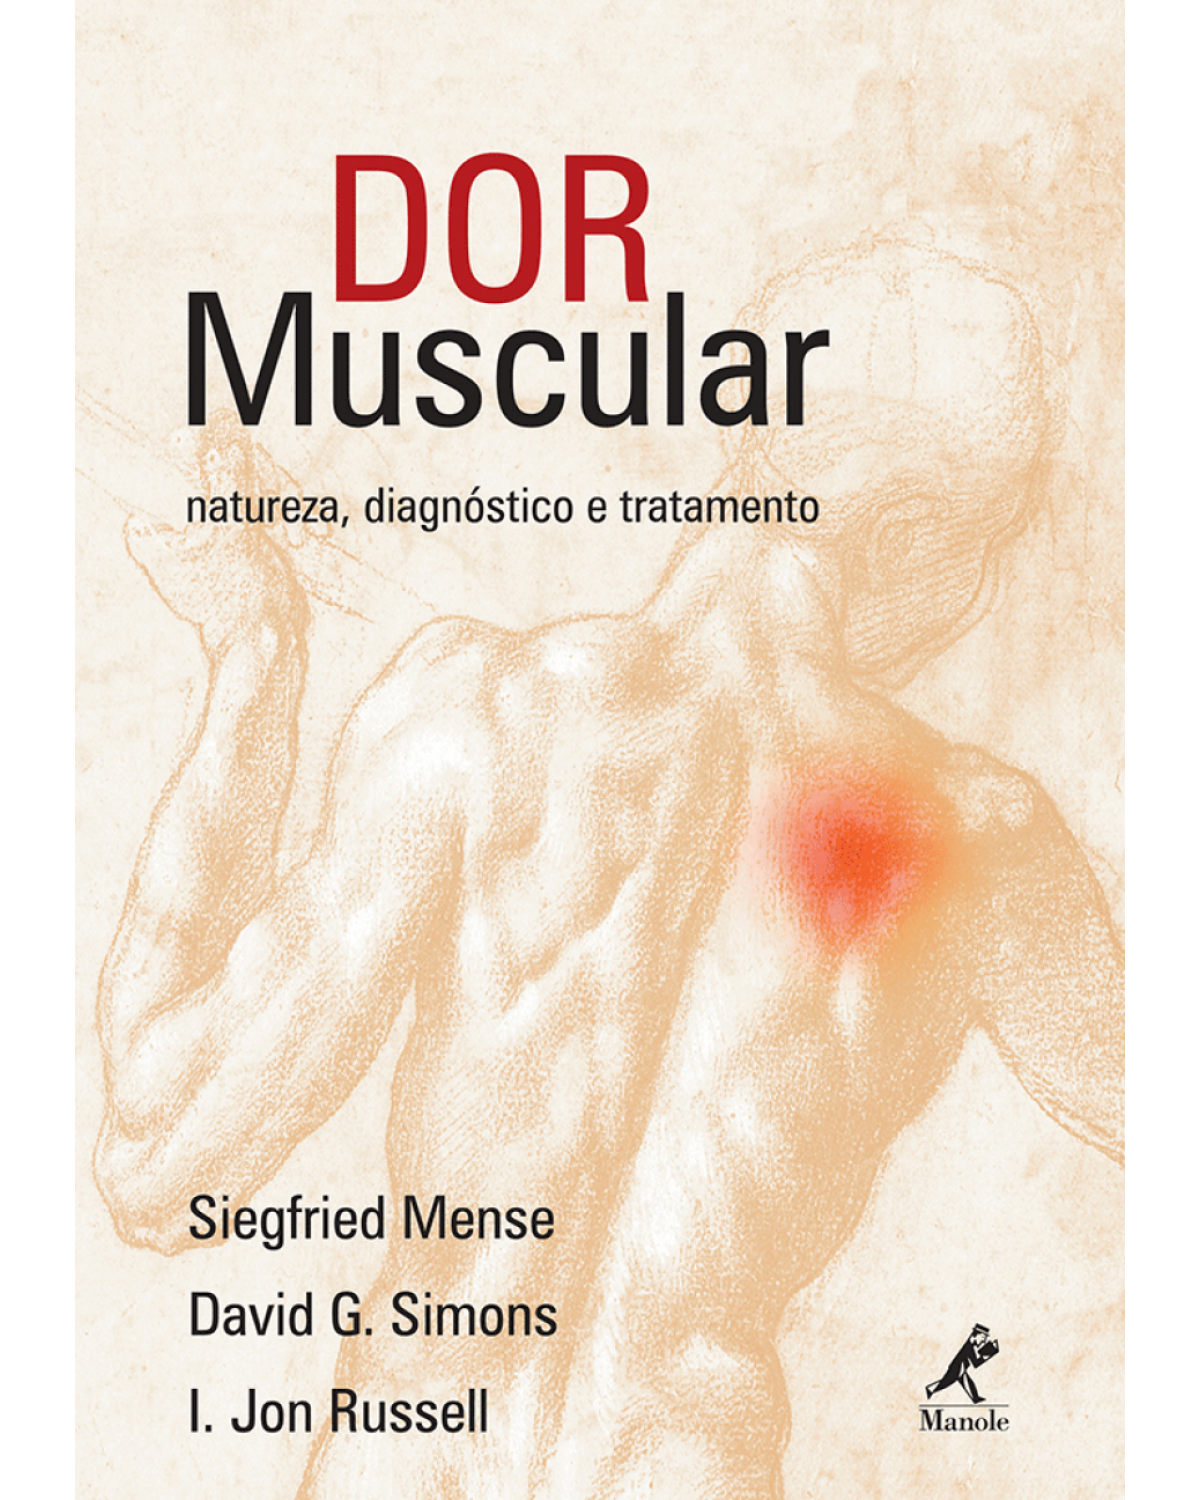 Dor muscular - Natureza, diagnóstico e tratamento - 1ª Edição | 2008